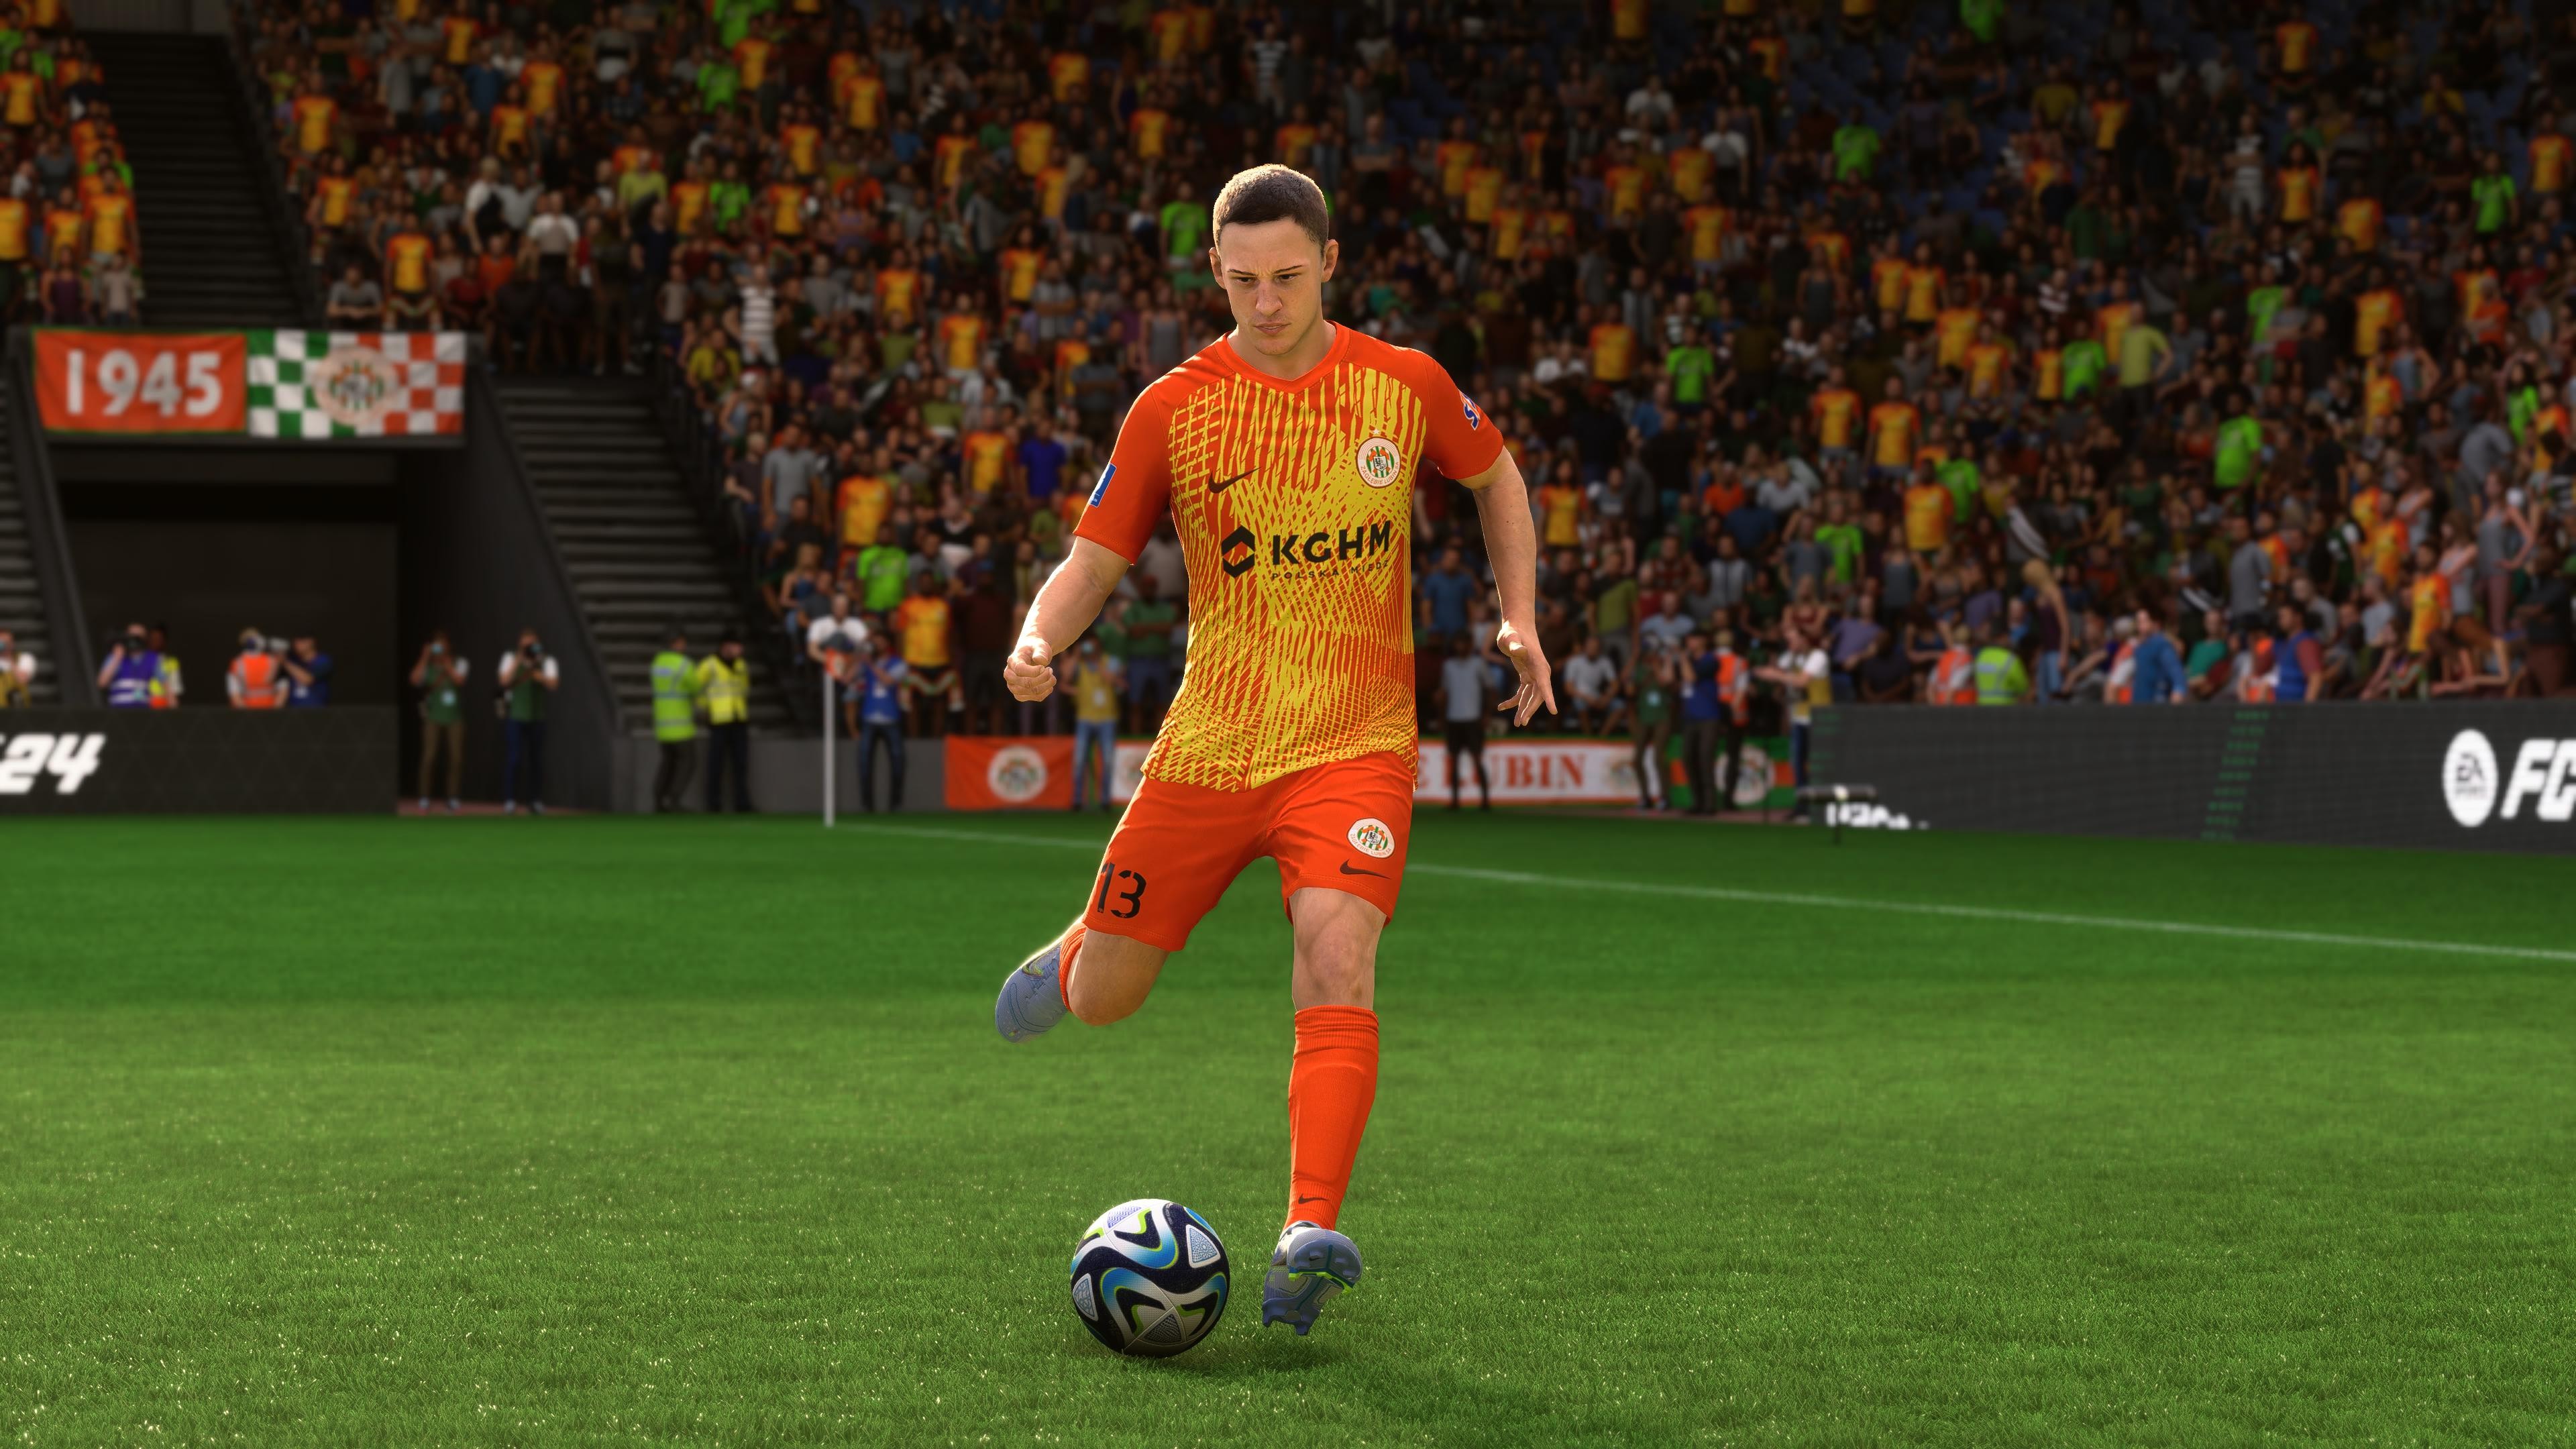 Zaglebie Lubin aus der polnischen Ekstraklasa trägt diese Saison ein wirres Muster aus Orange und Gelb, um sich von seinen Gegnern abzusetzen. Erwähnenswert auch das Auswärtstrikot: Im selben Muster mischen sich ein dunkles und ein Quietschgrün.